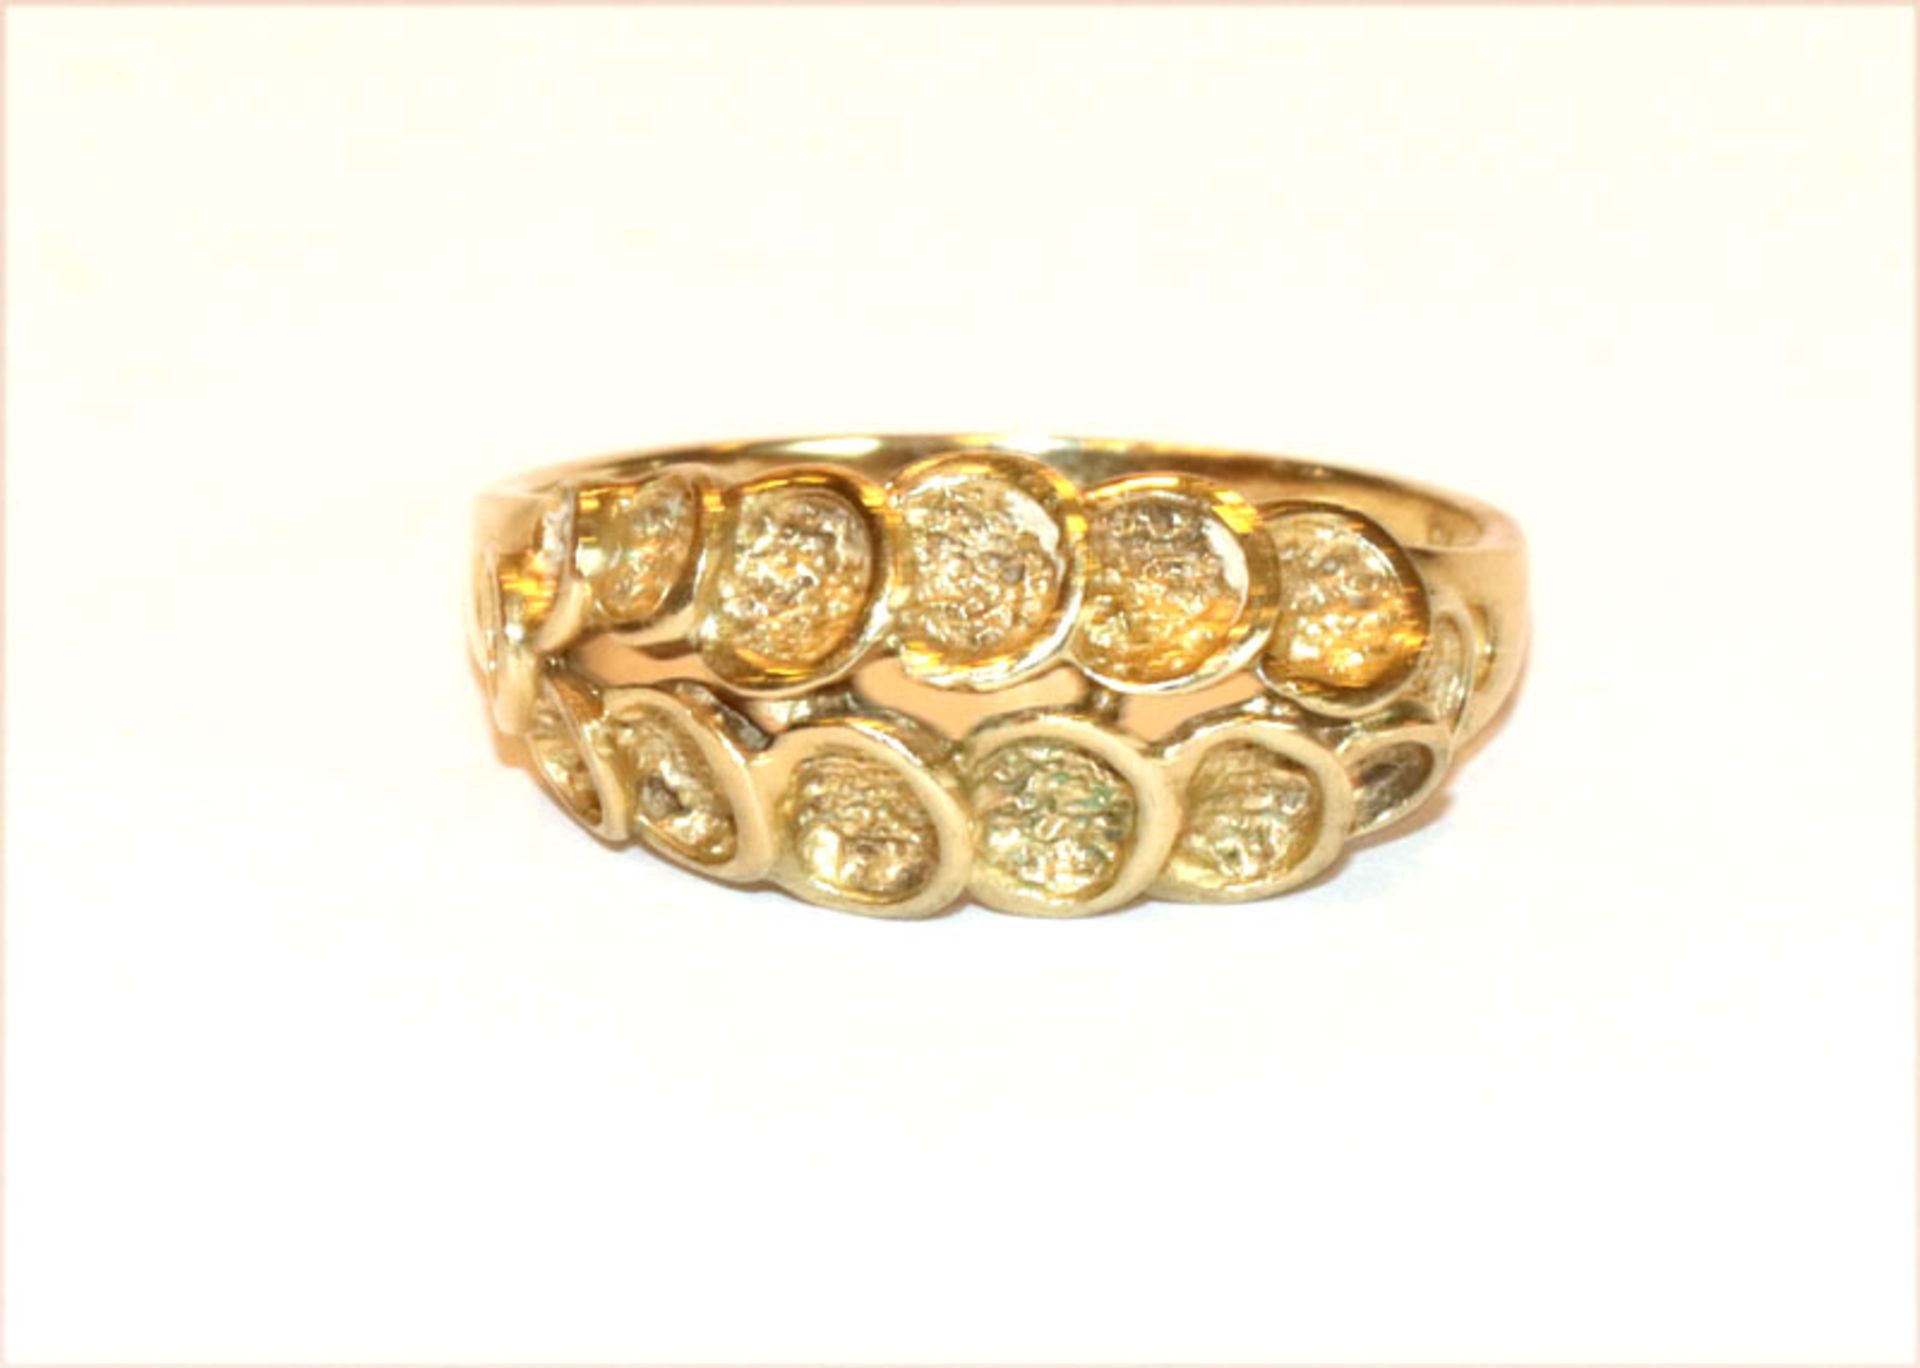 8 k Gelbgold Ring mit reliefiertem Dekor, Gr. 55, 3 gr.